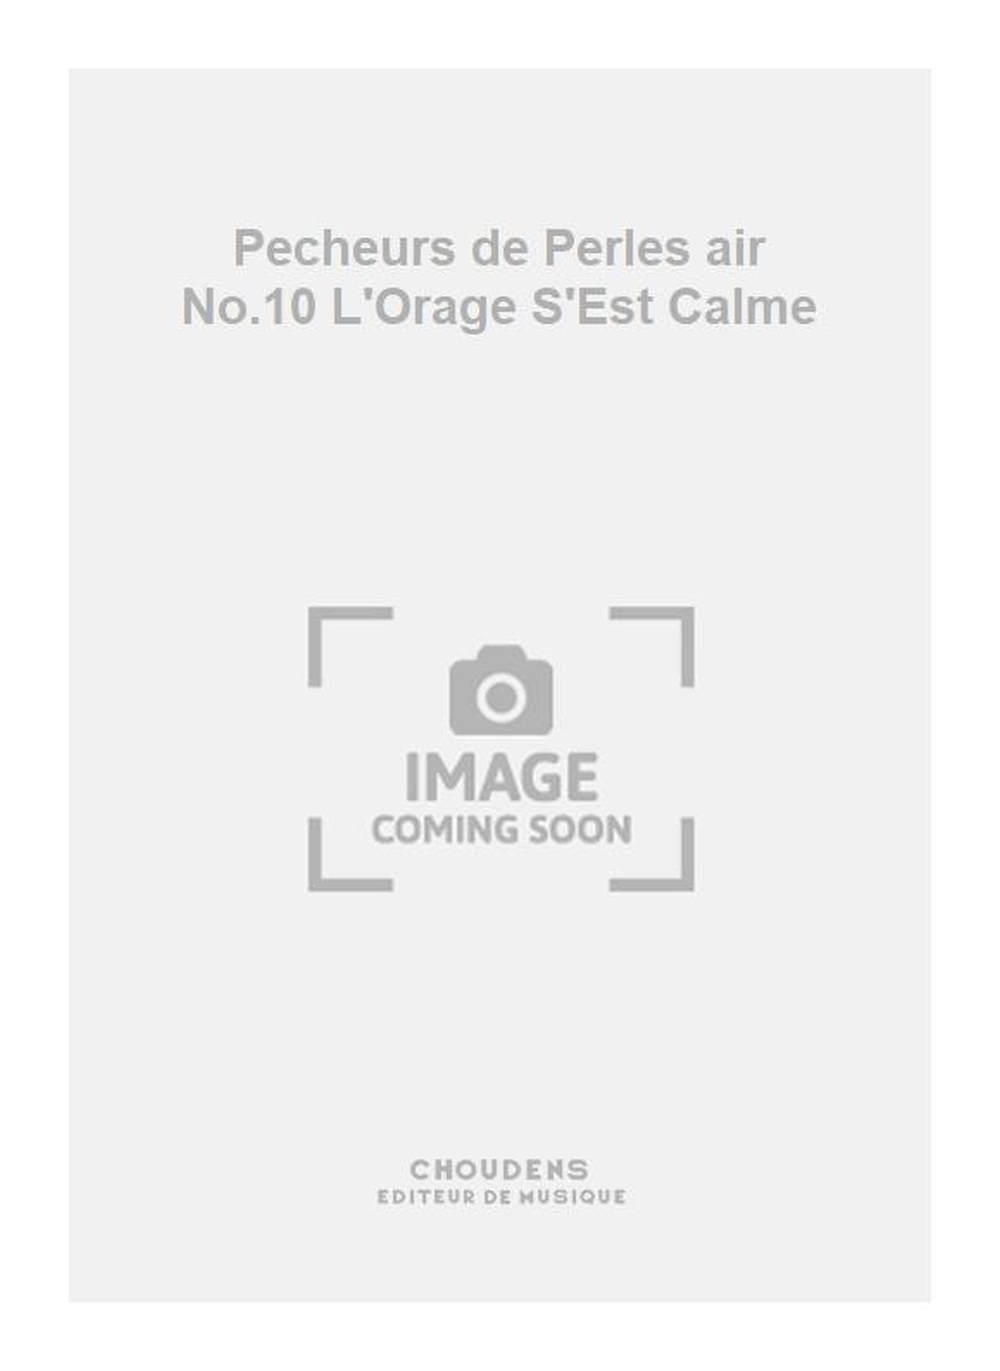 Georges Bizet: Pecheurs de Perles air No.10 L'Orage S'Est Calme